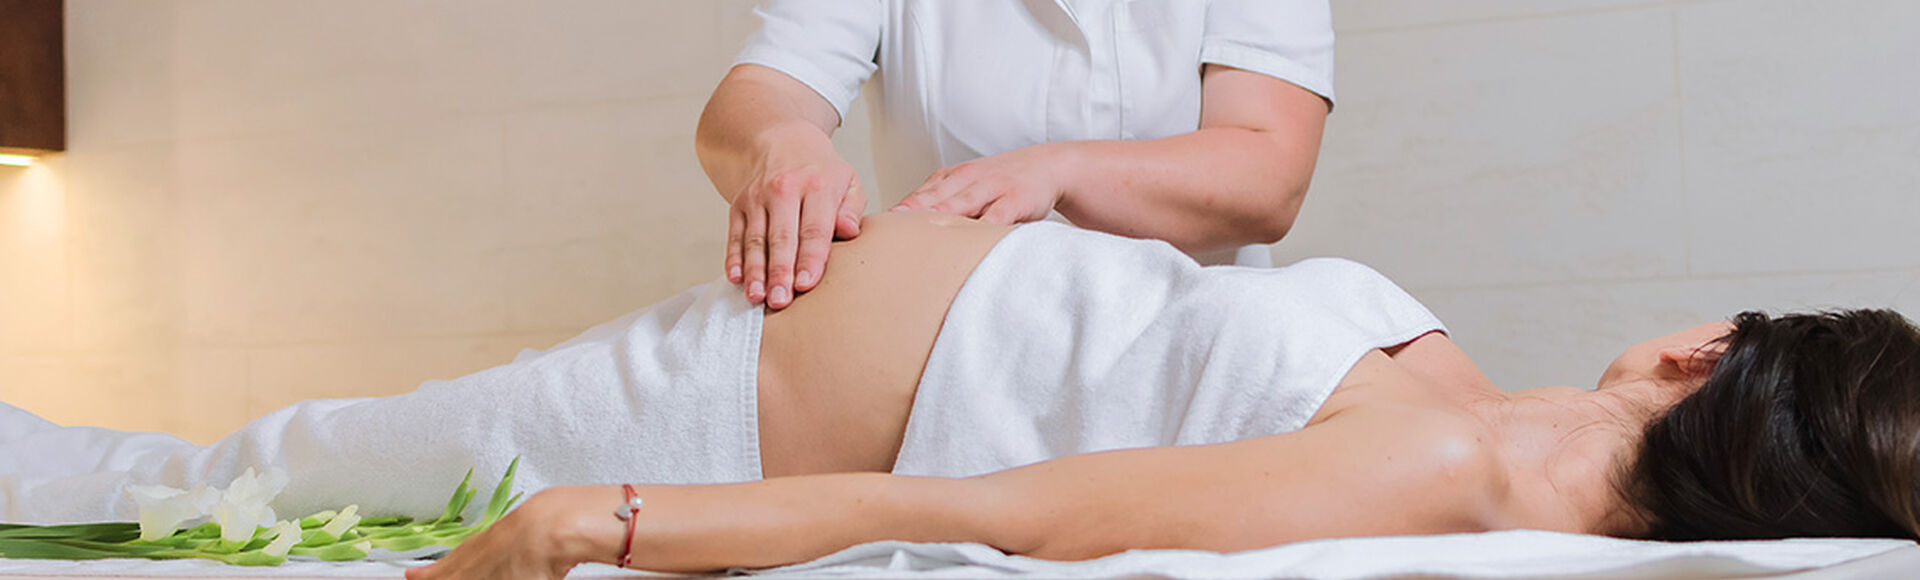 Contraindicaciones en los masajes para embarazadas